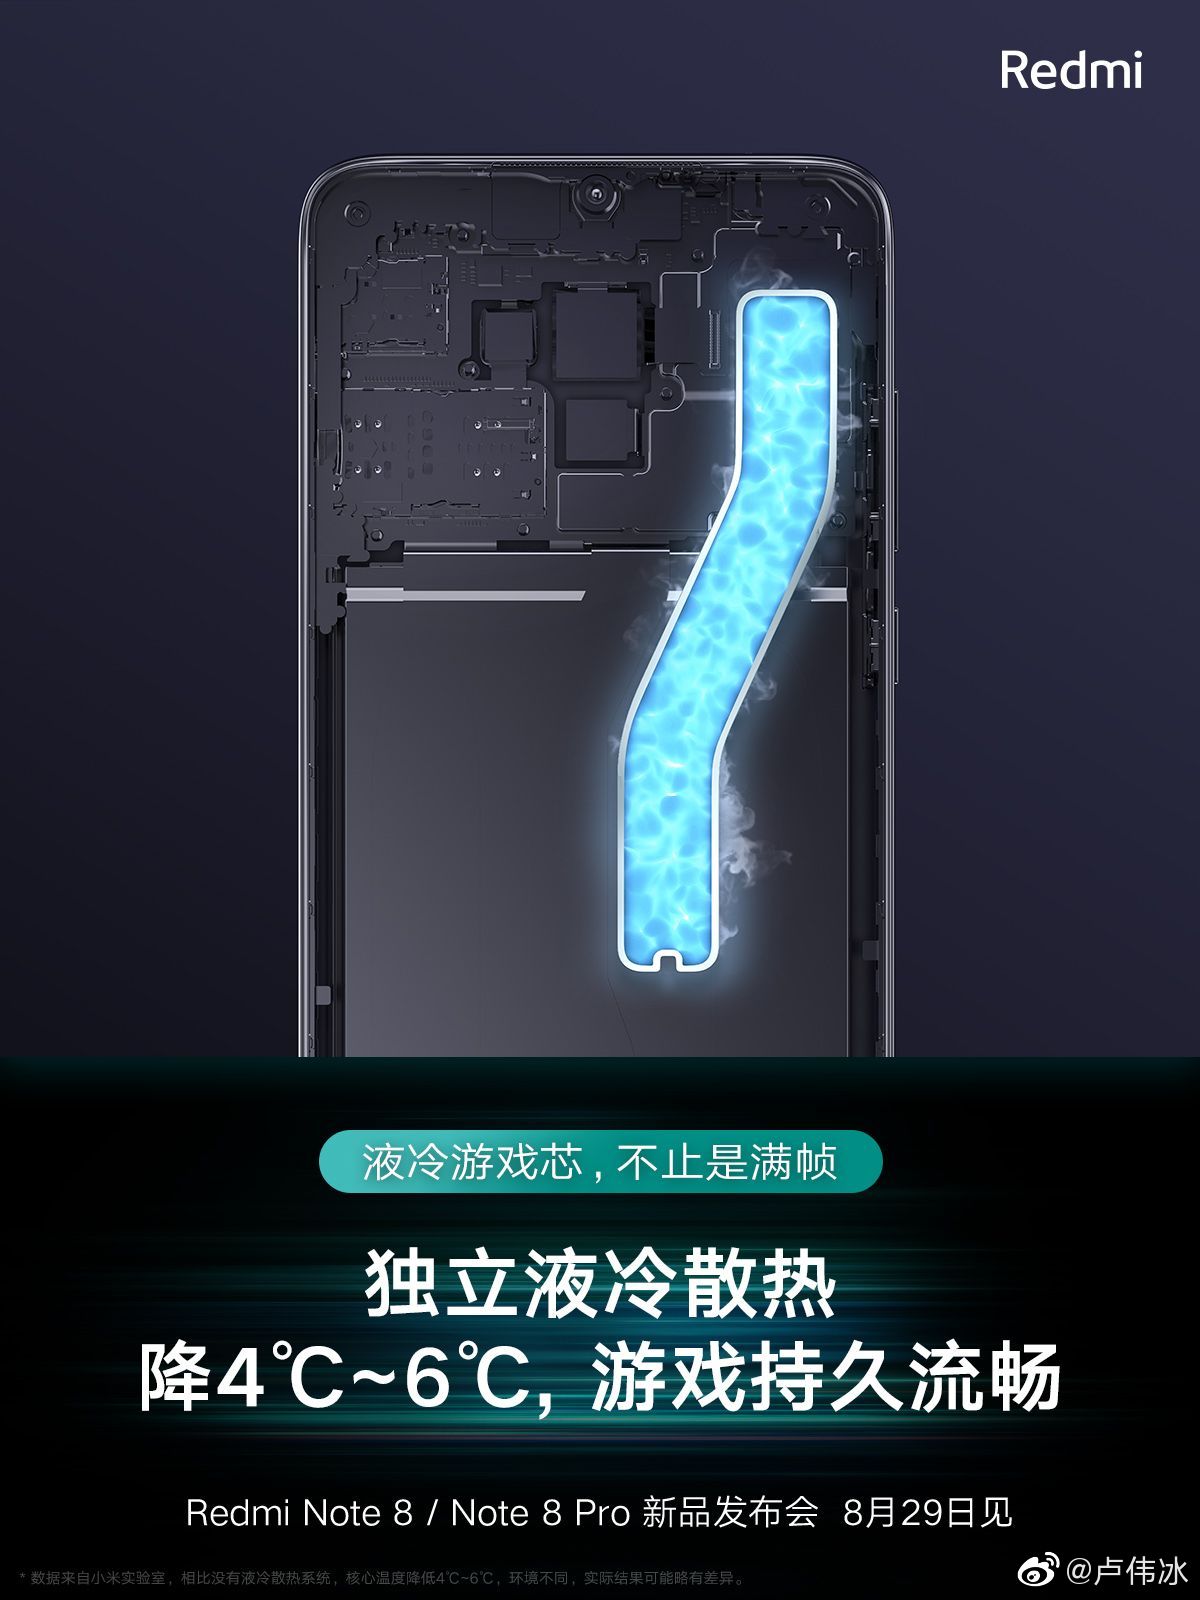 Redmi Note 8 Pro berfokus pada game: foto yang baru difilter 2